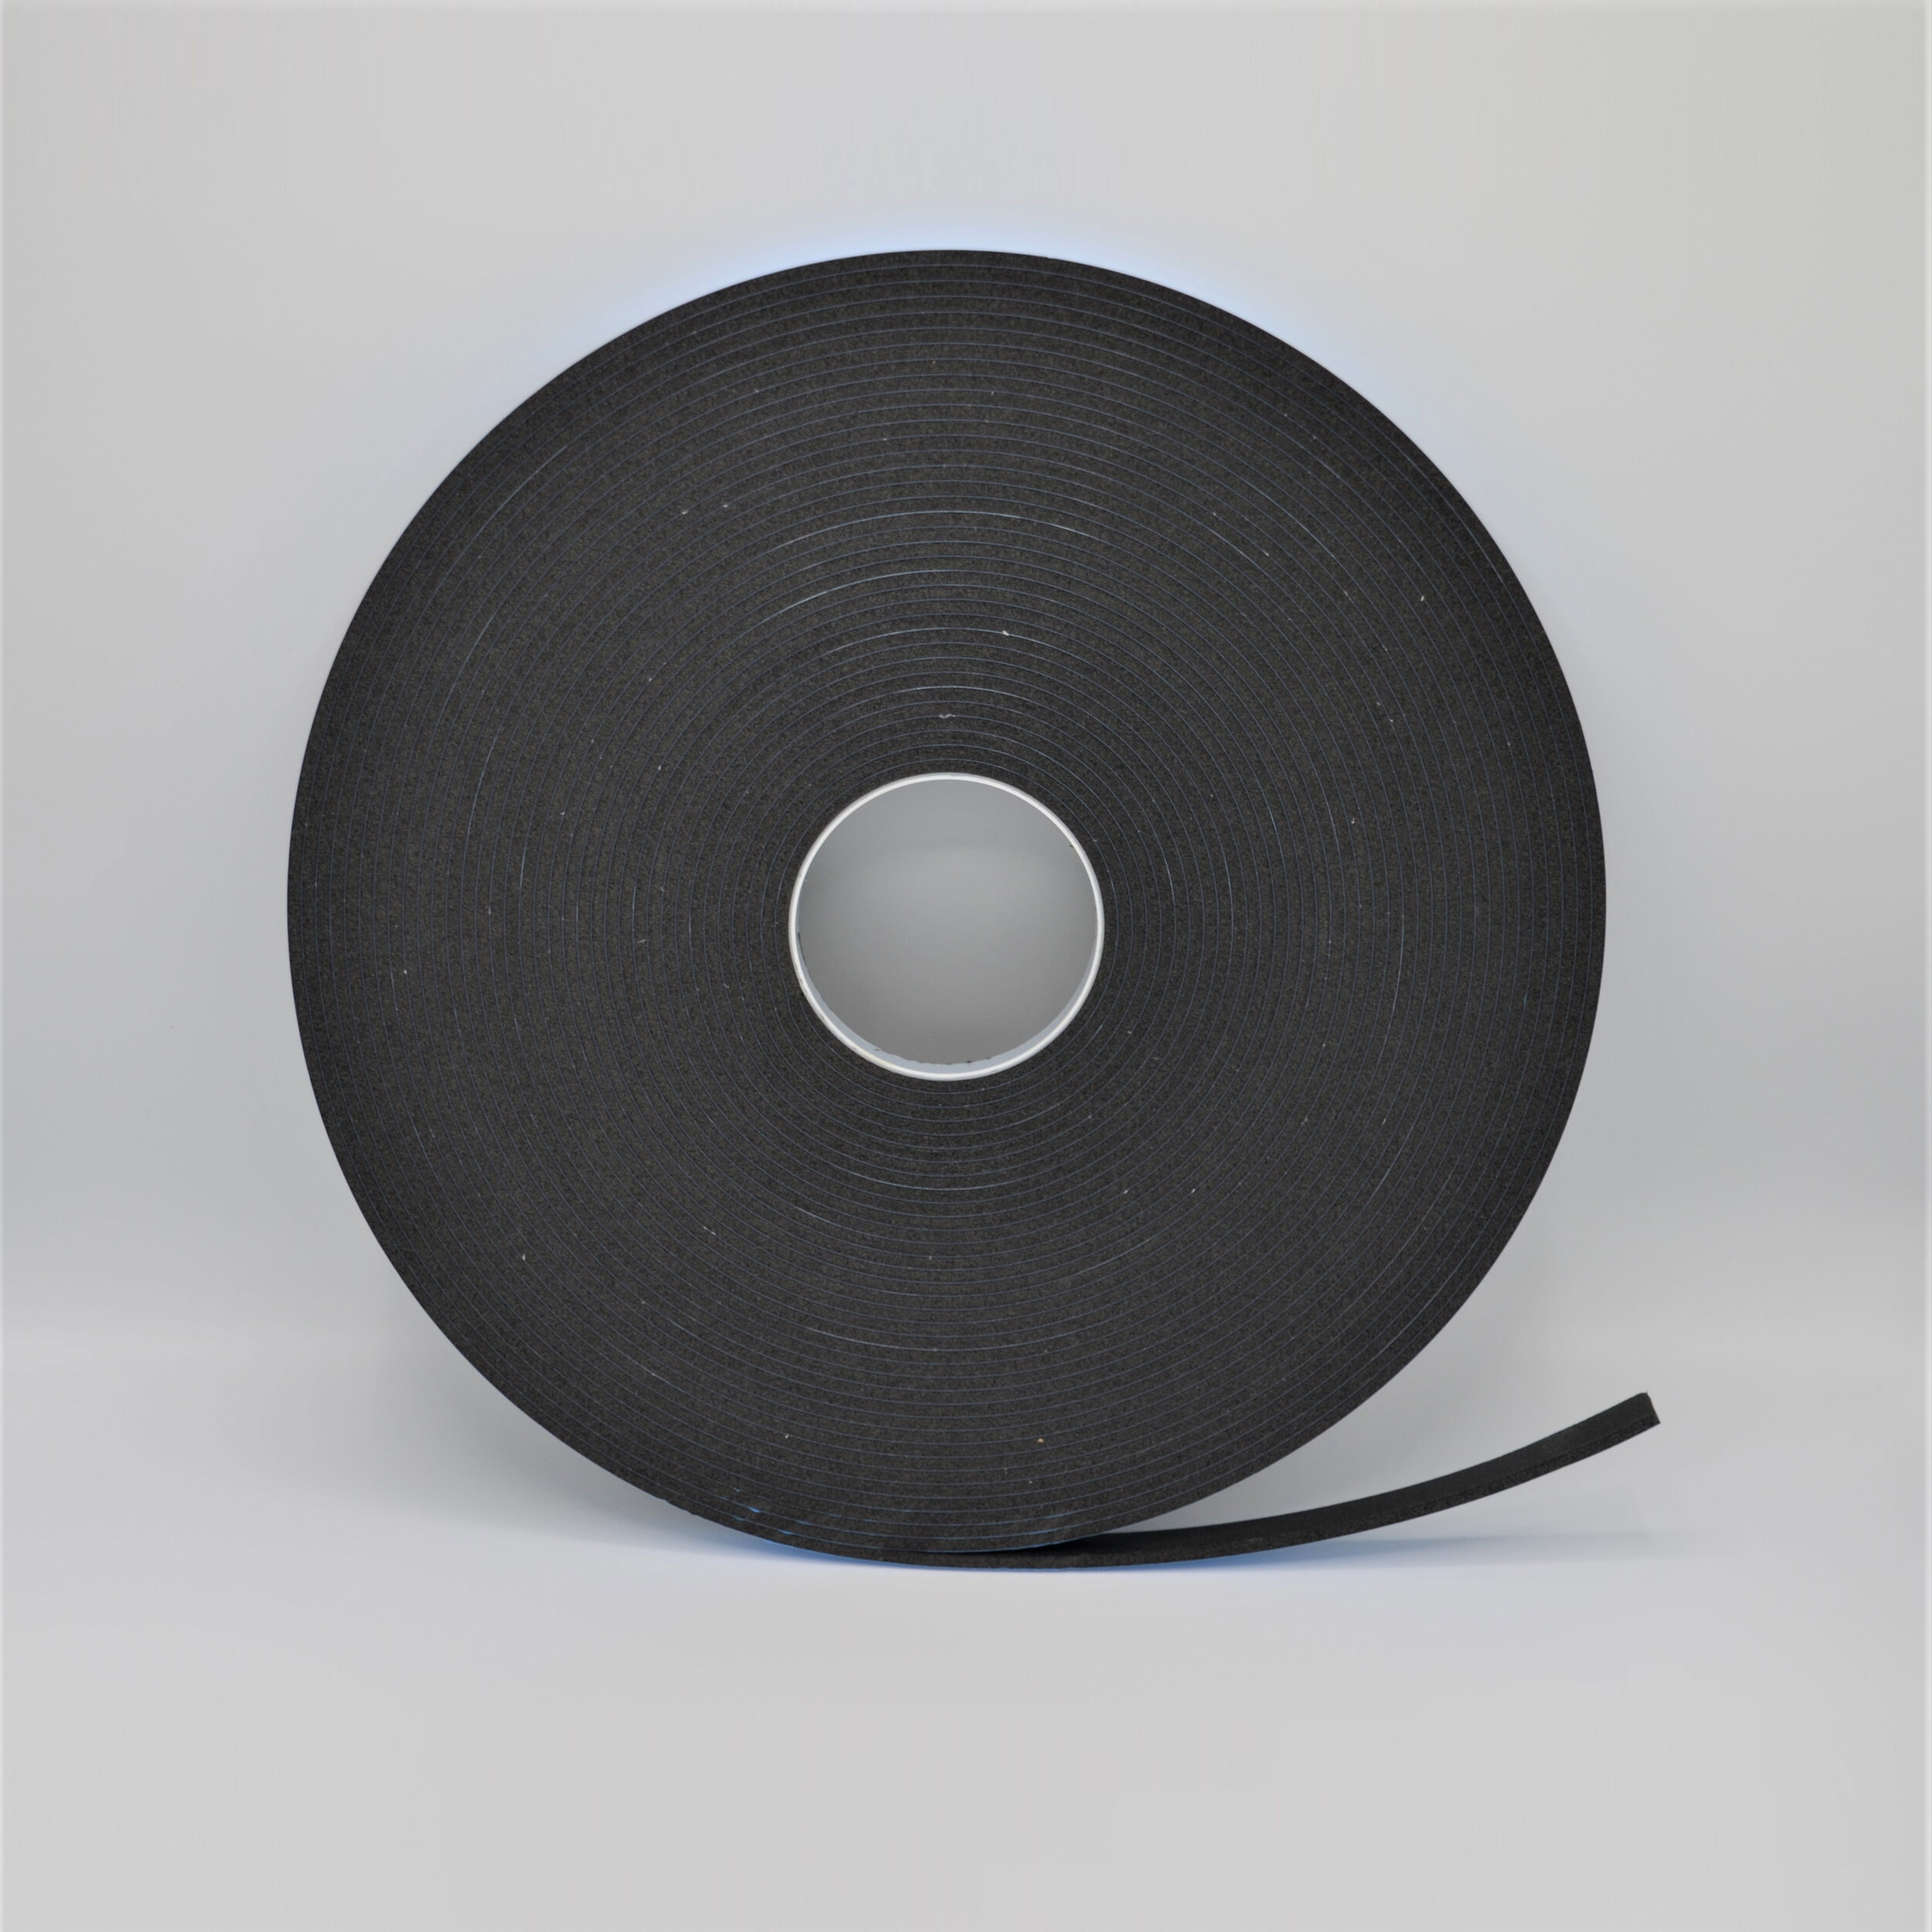 Polyethylene Foam Tape, Single Sided Foam Tape - Black or White